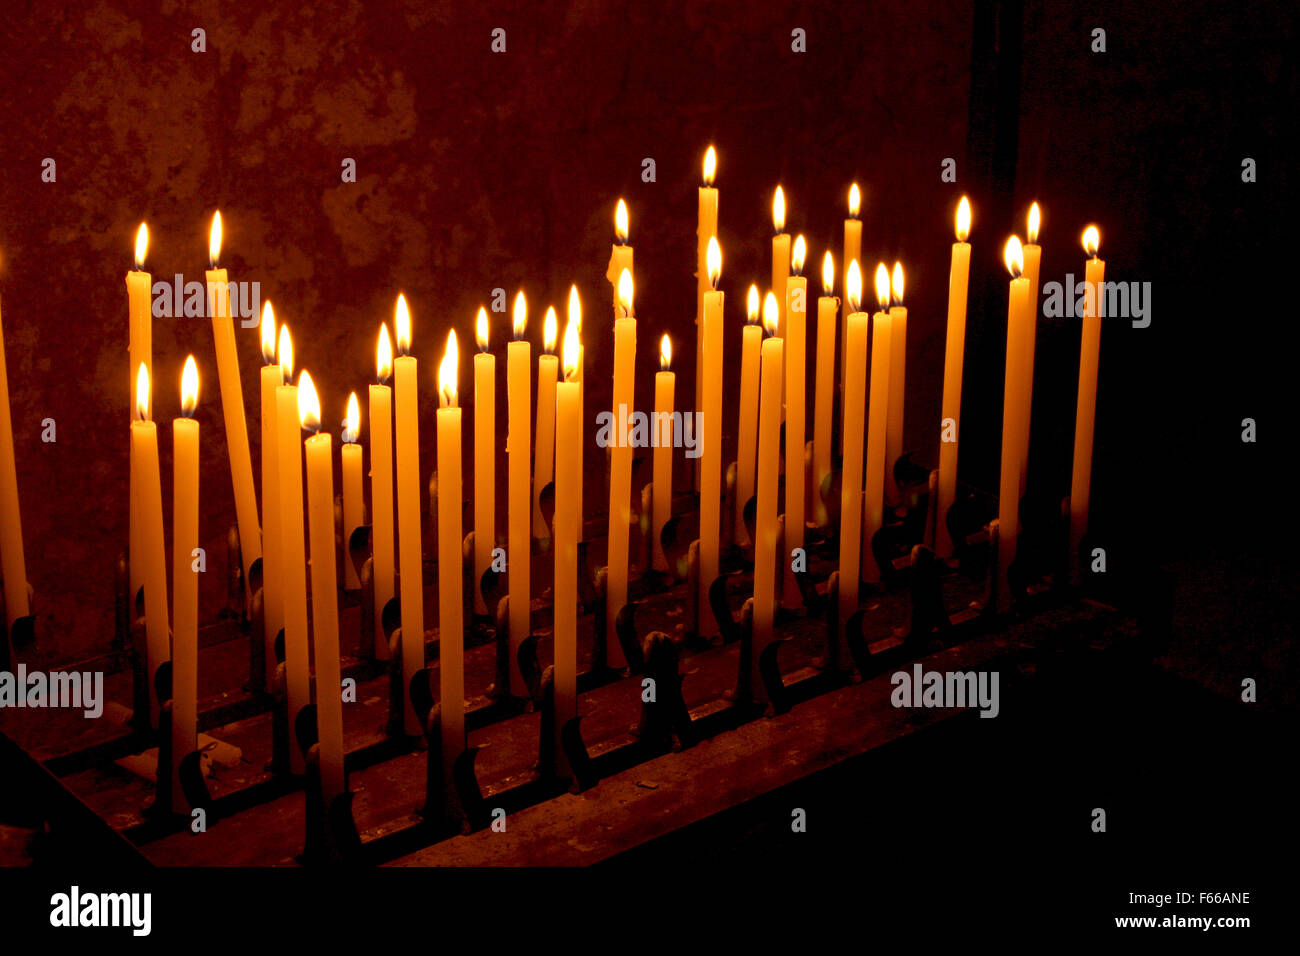 Toskana Italien Kirchenkerzen Kerze dunklen Kerzenschein Hintergrund Flamme Licht religiöse Religion brennenden Feier gelbe Geist Stockfoto